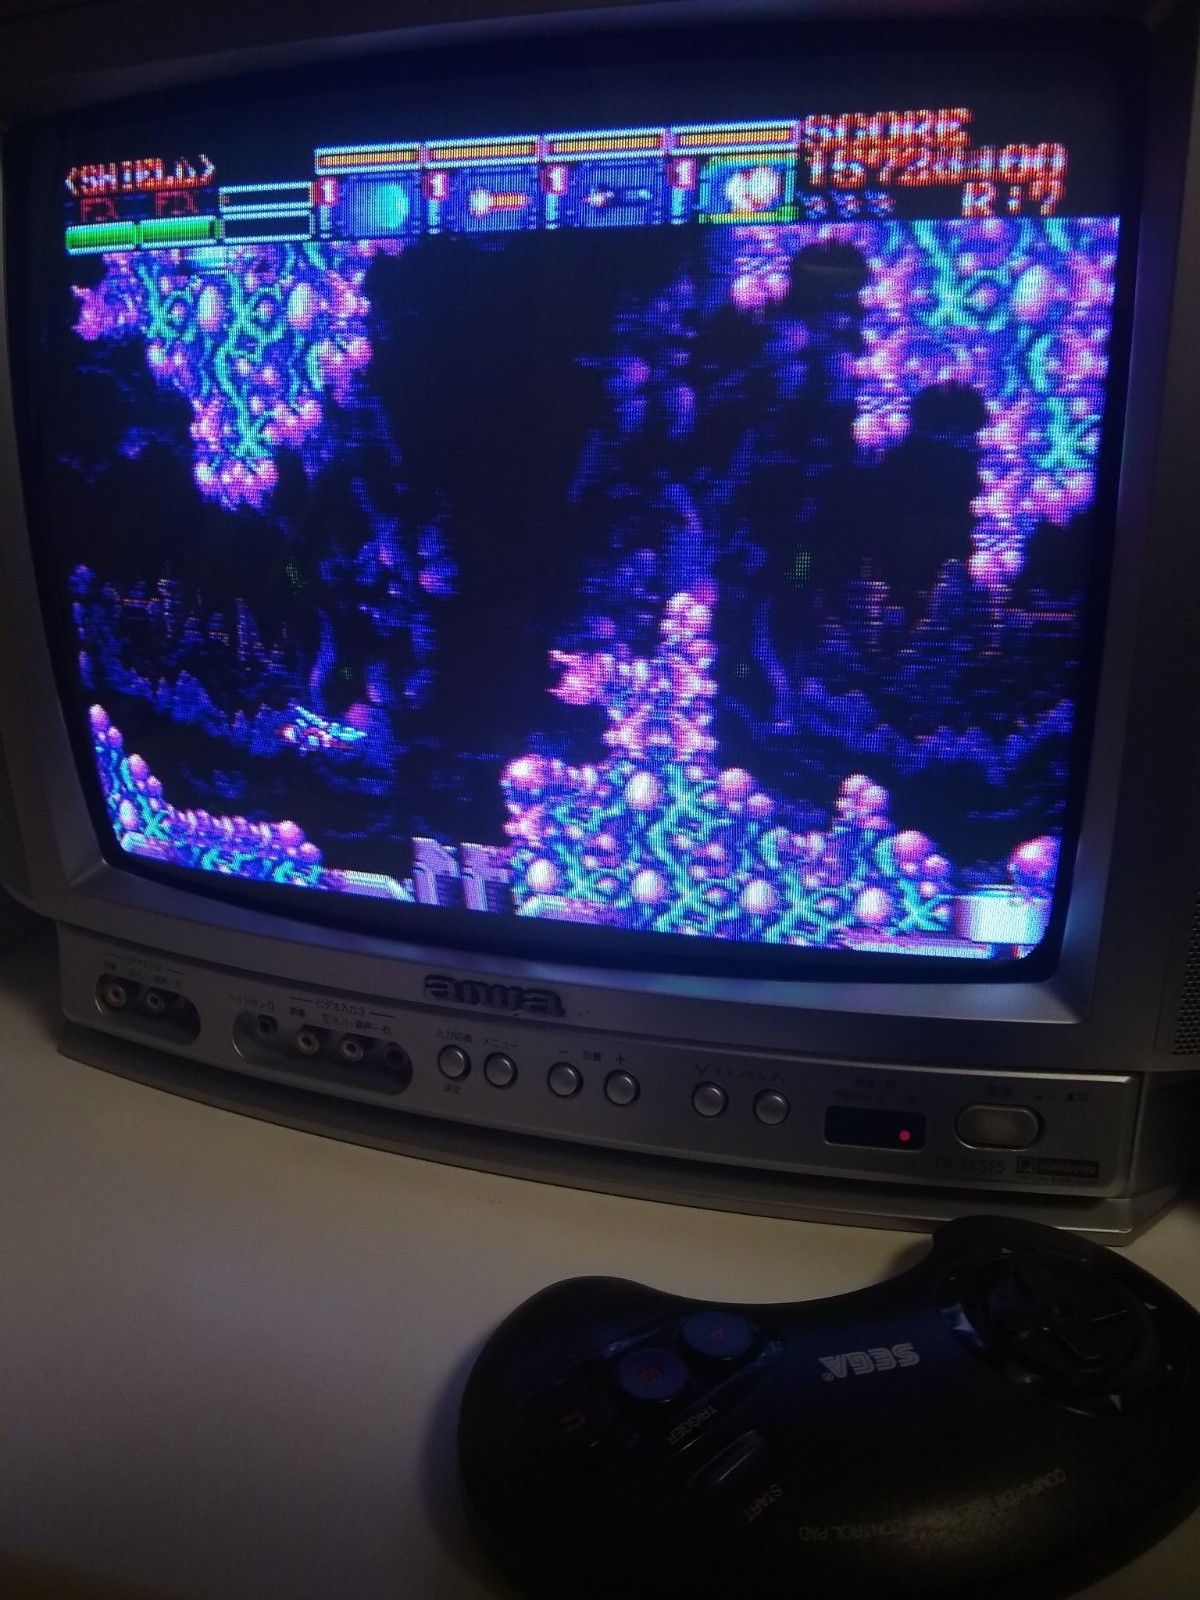 《伊苏》音乐创作者古代佑三发表将制作Mega Drive射击游戏新作 亲自包办配乐、设计与监制